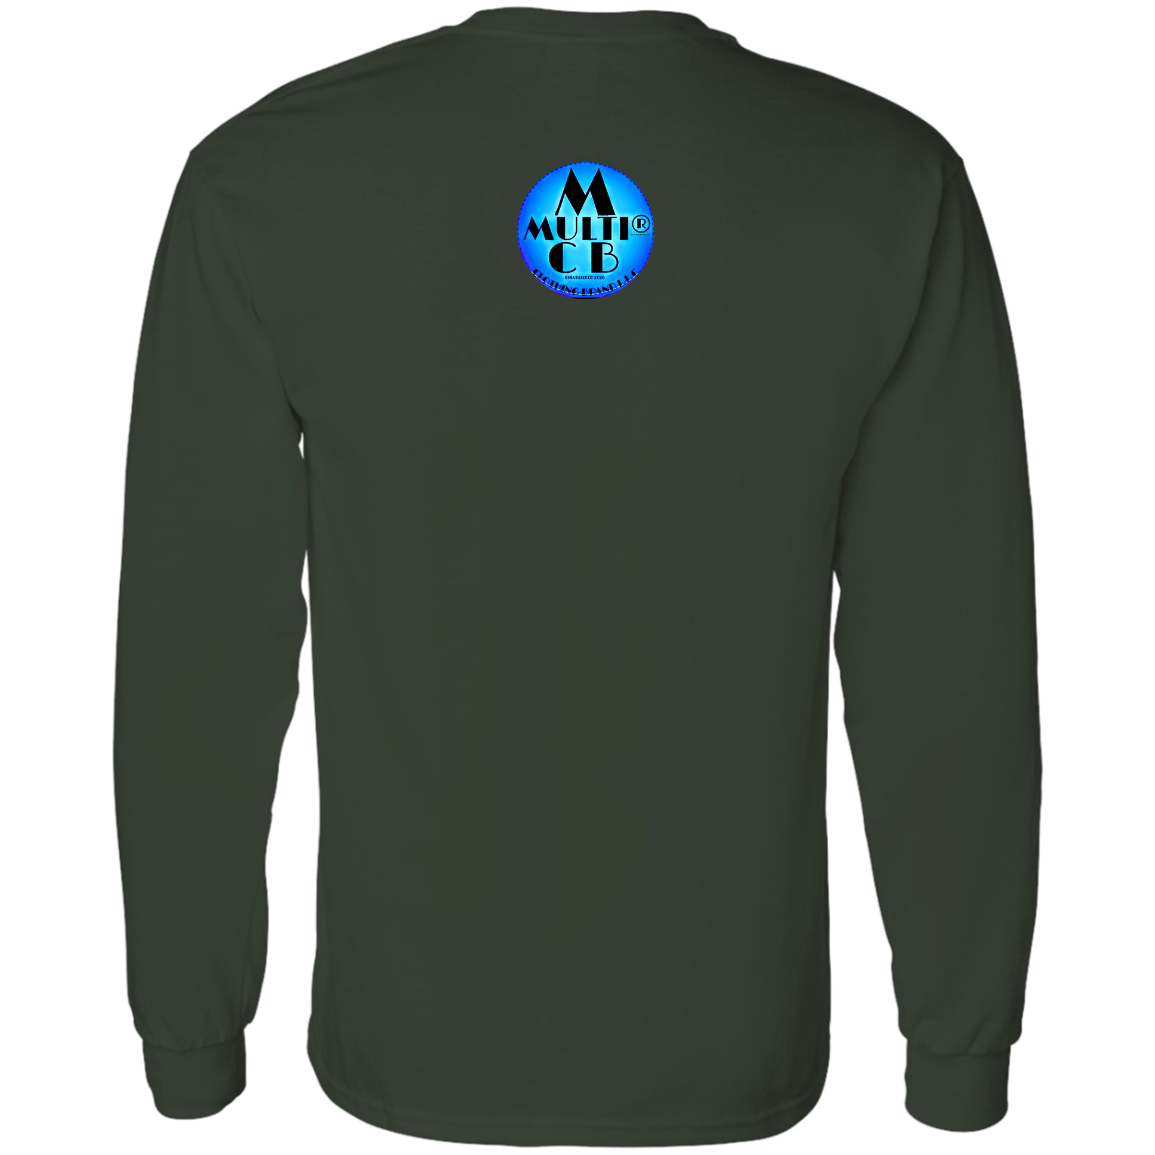 N Lite Ten - Men's LS T-Shirt 5.3 oz. CustomCat